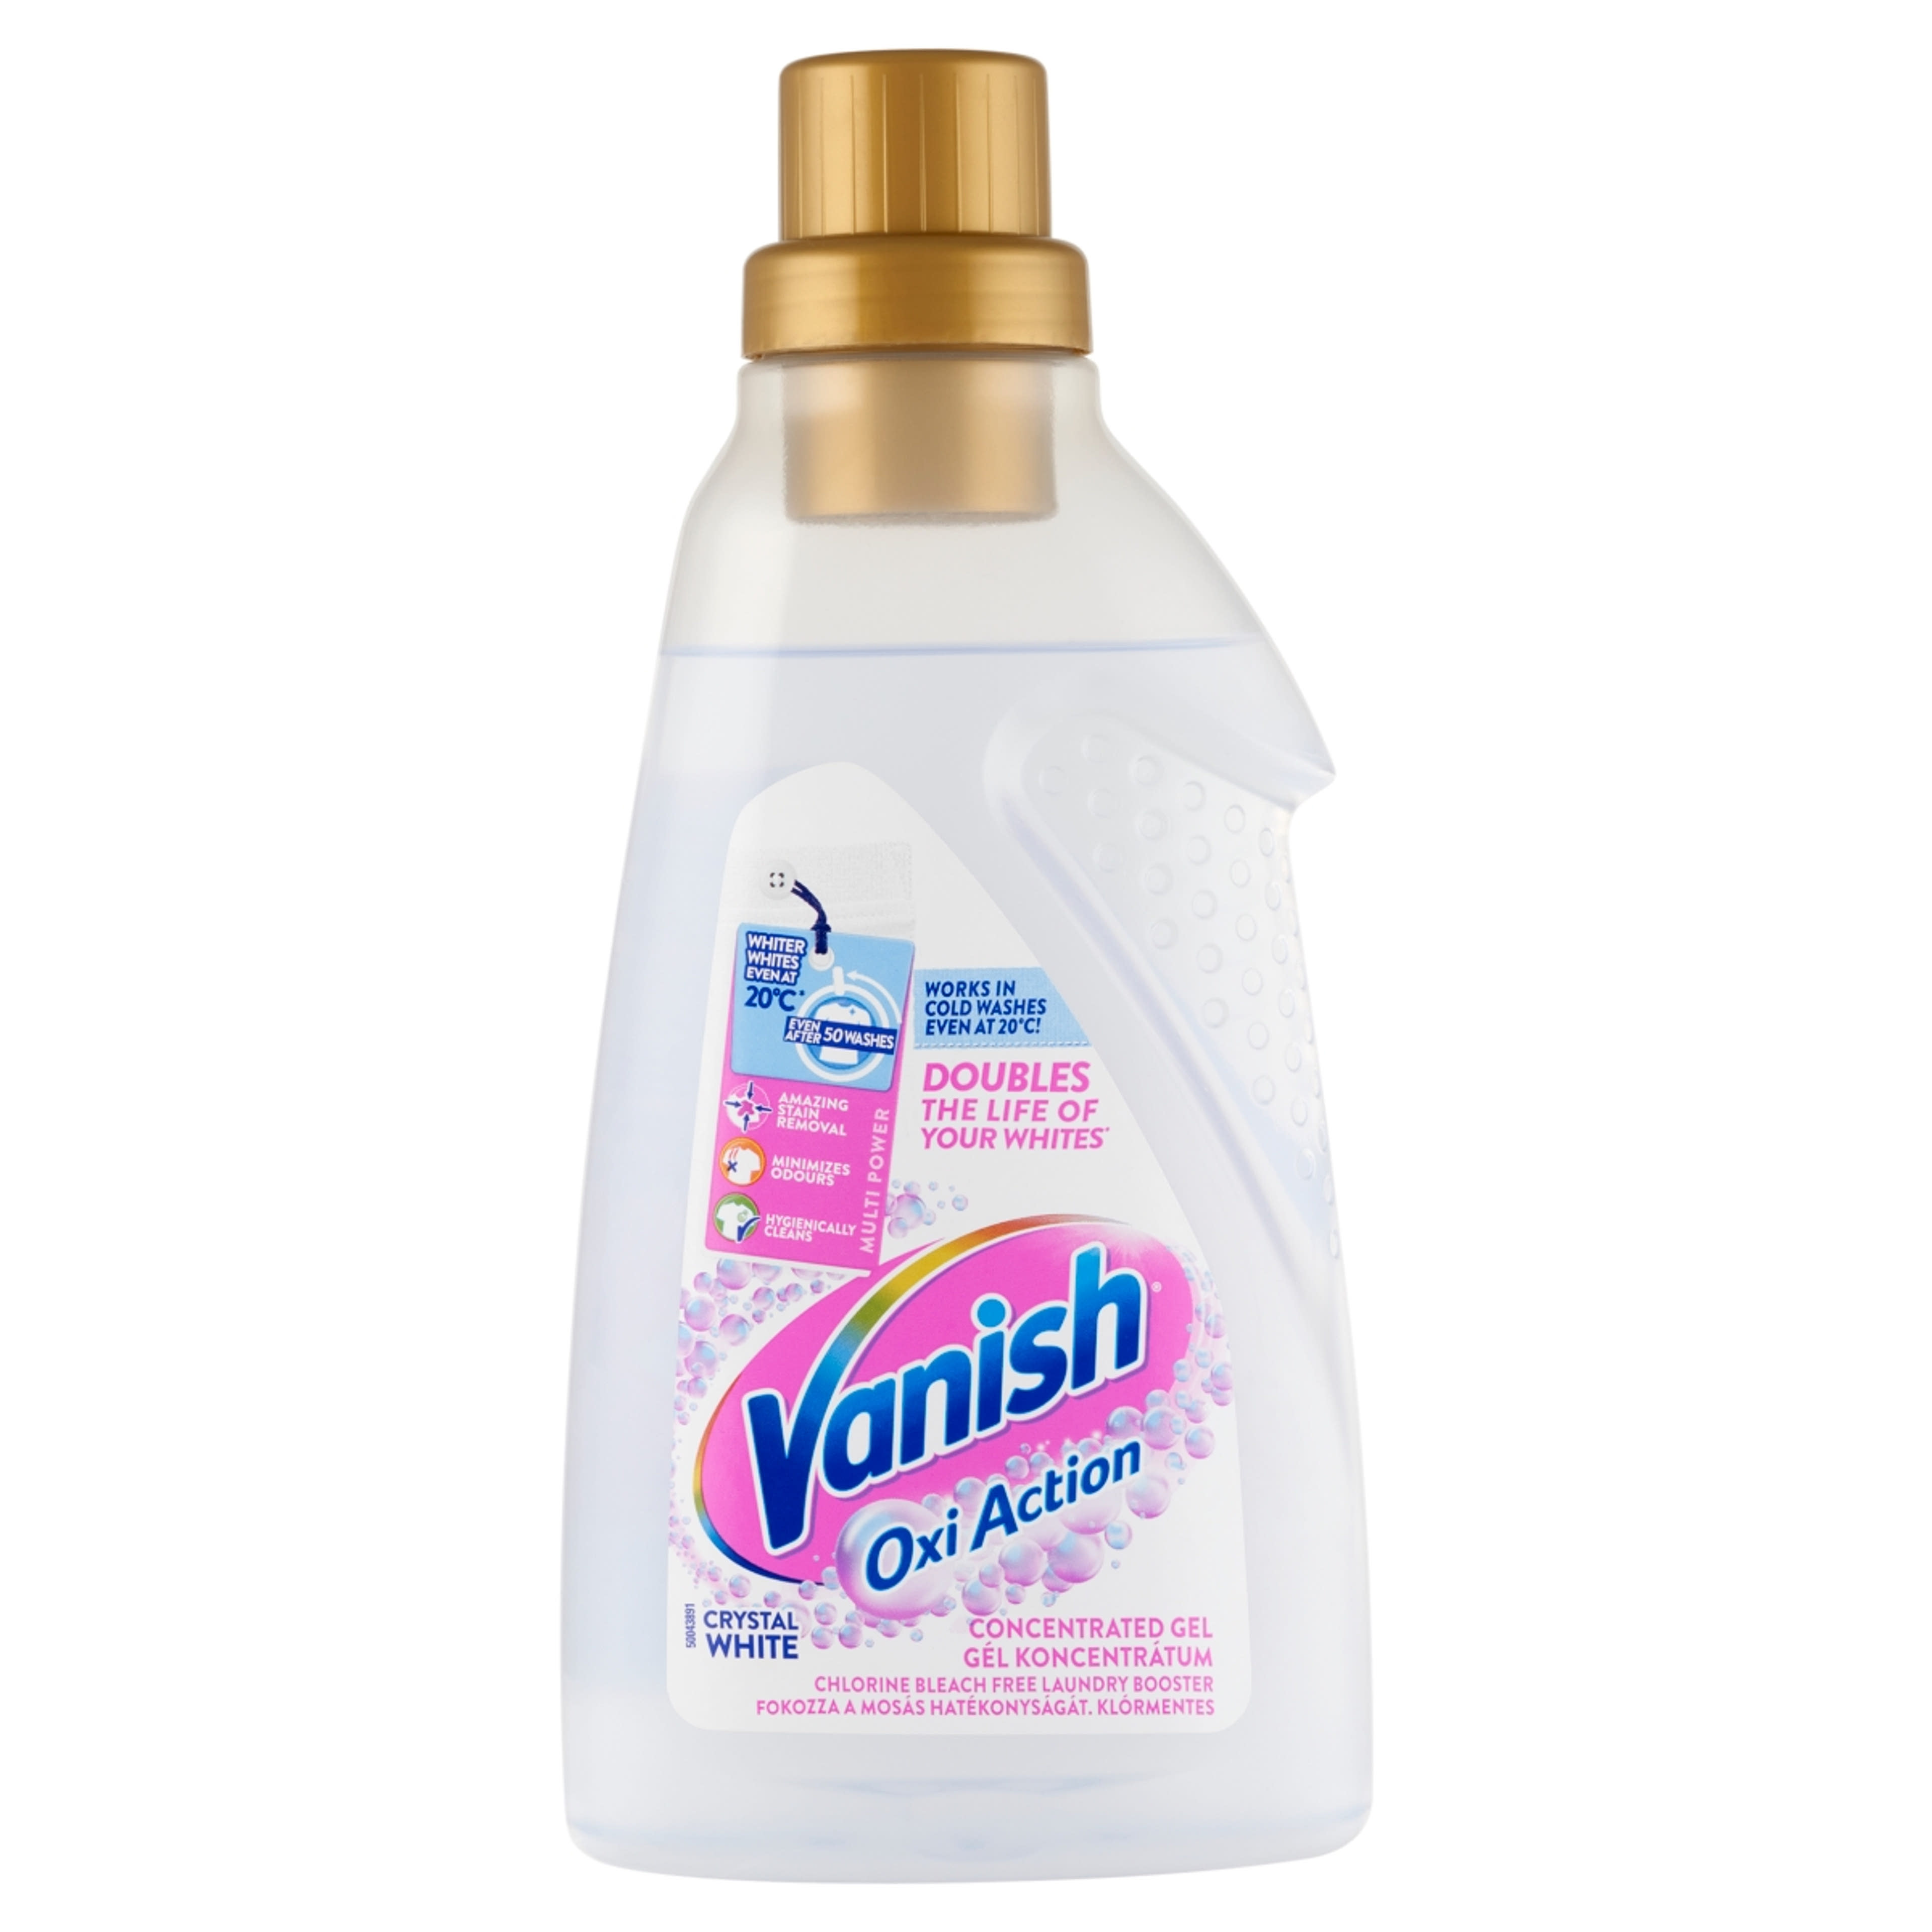 Vanish Oxi Action folteltávolító és fehérítő koncentrátum gél - 750 ml